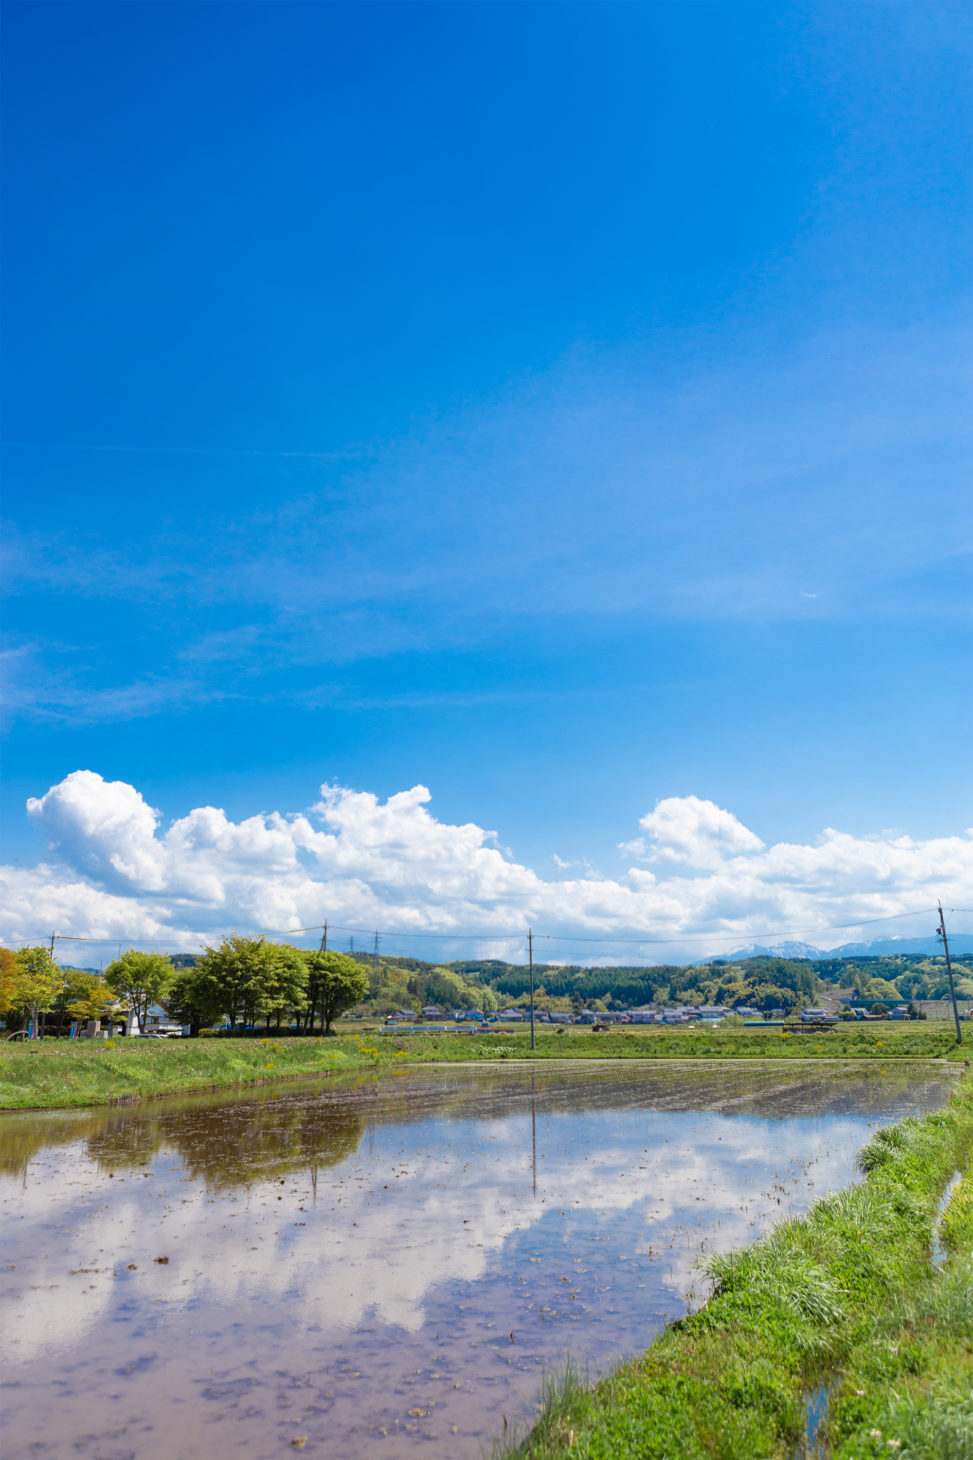 田植え前の水田と空の風景の写真素材